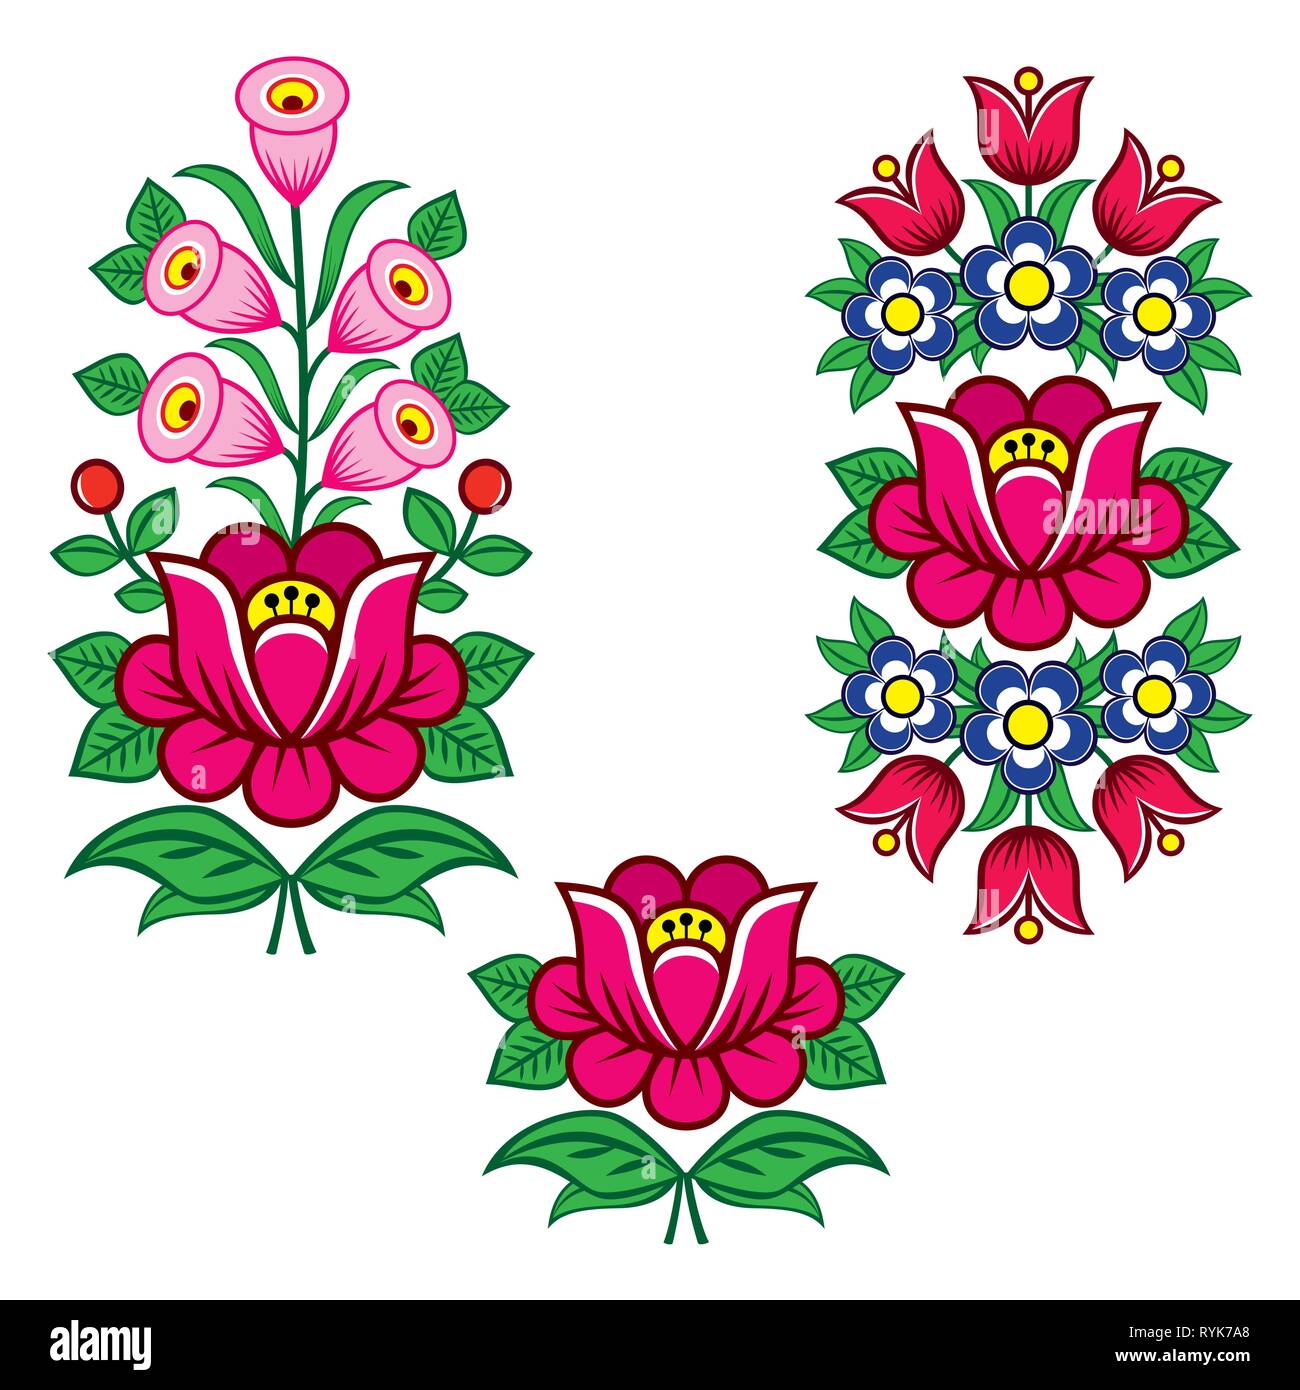 L'art populaire de dessins vectoriels polonais avec des fleurs pour weddding invitation, carte de vœux, Zalipie avec motifs fleurs Illustration de Vecteur